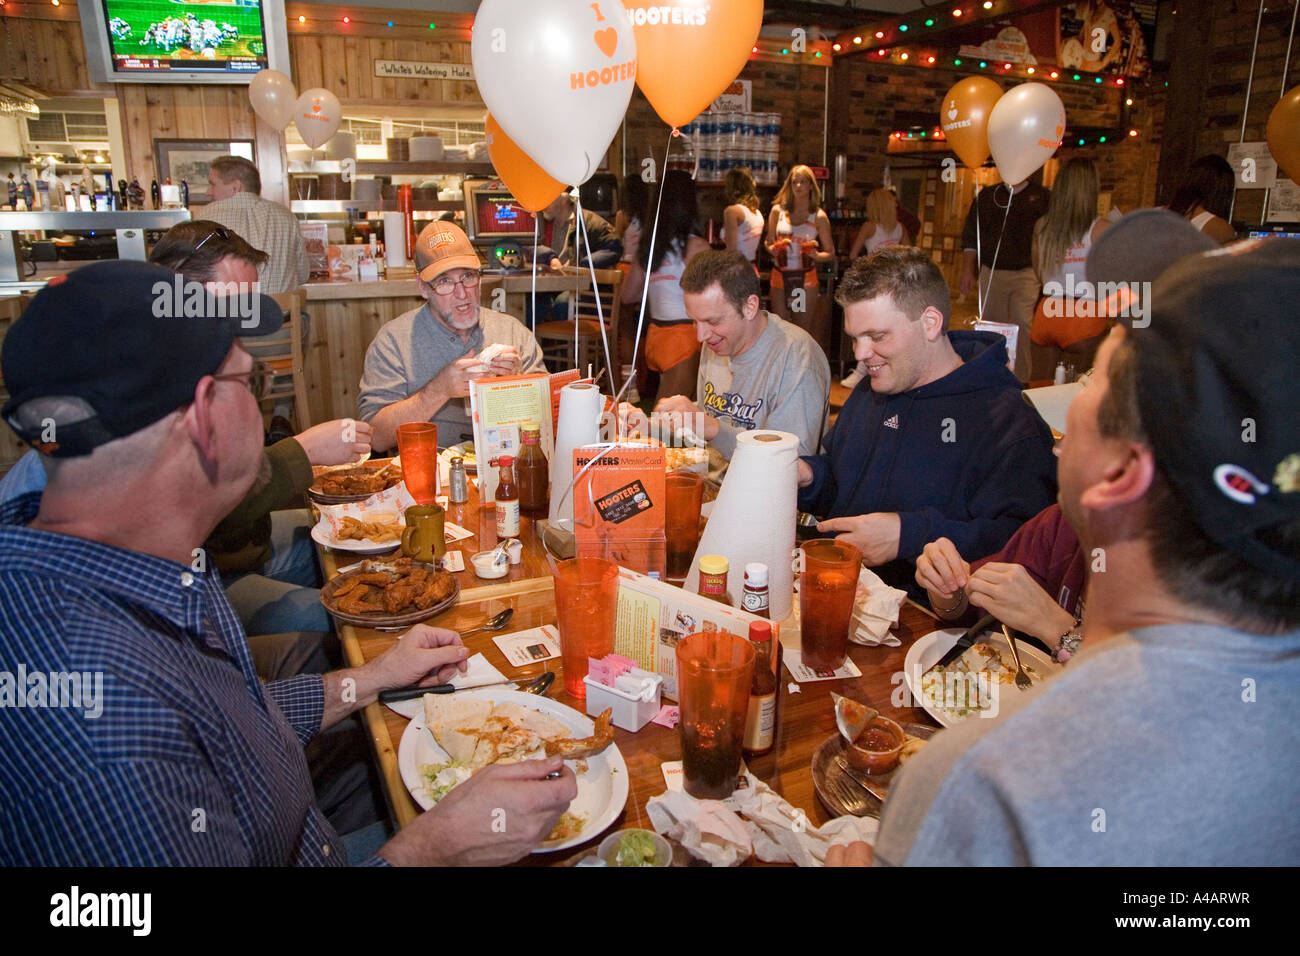 Troy Michigan i clienti a mangiare il pranzo durante la grande apertura di un Hooters ristorante Foto Stock